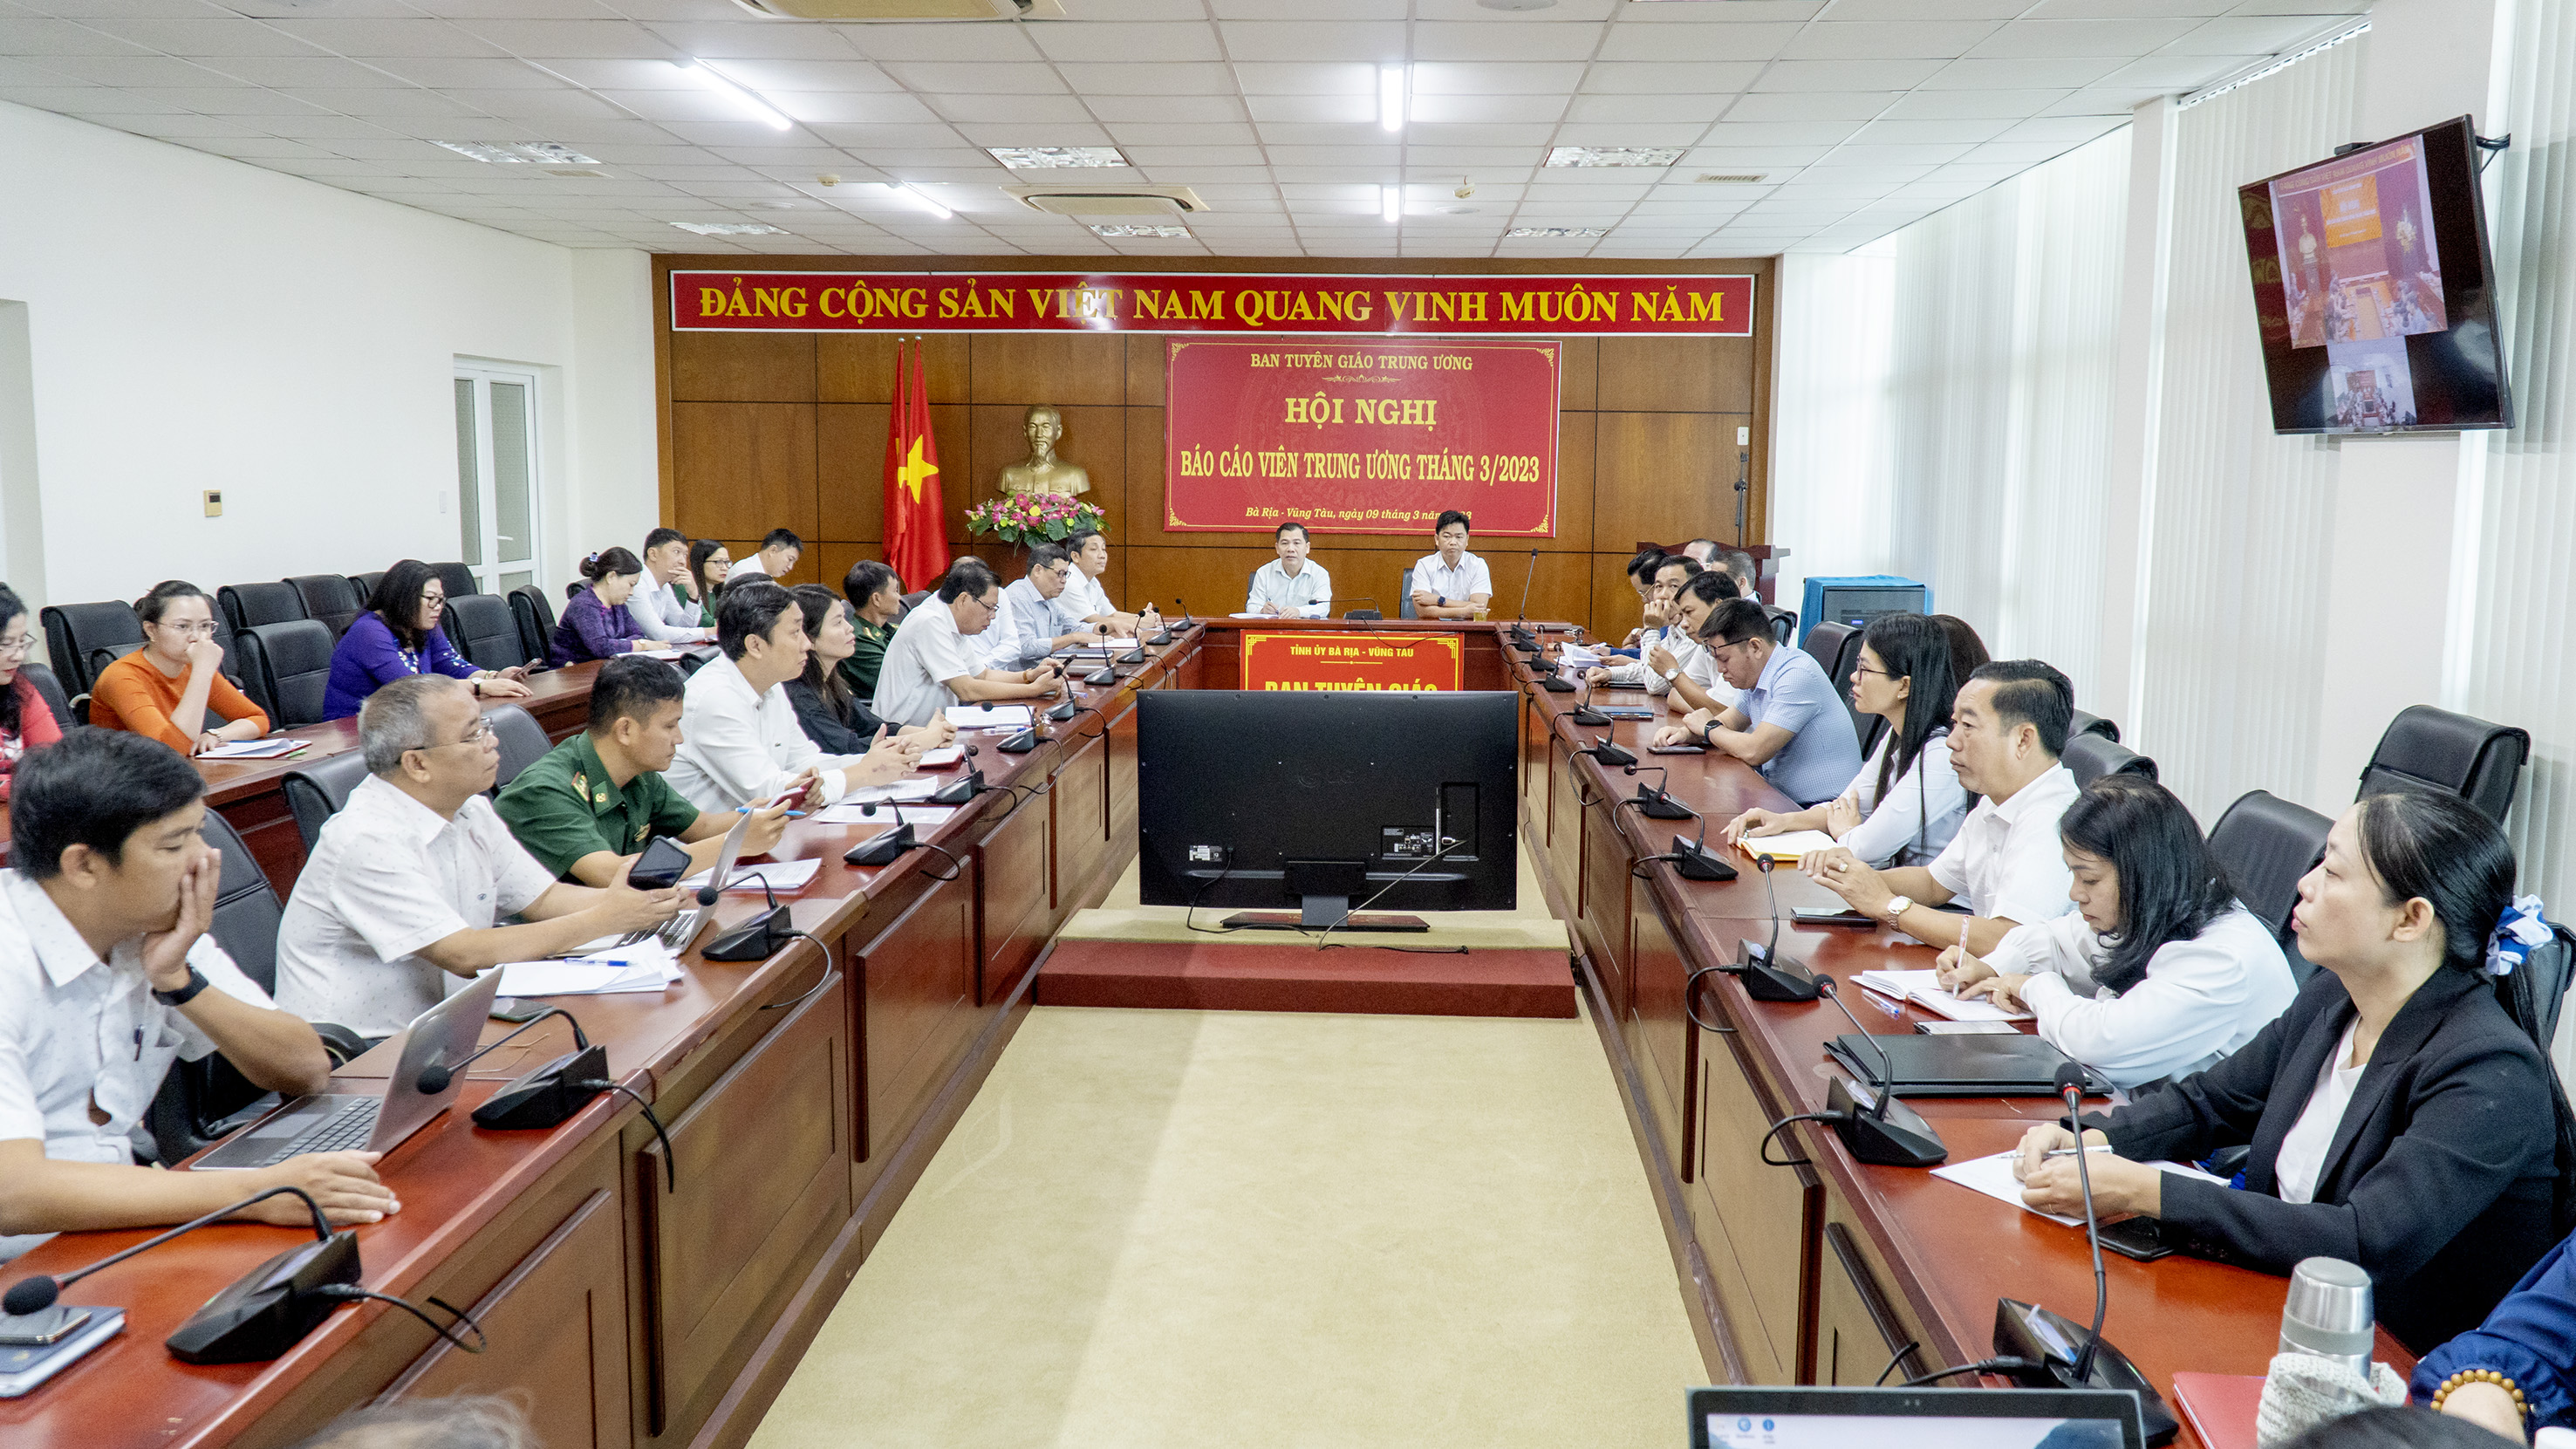 Quang cảnh hội nghị tại điểm cầu Ban Tuyên giáo Tỉnh ủy Bà Rịa - Vũng Tàu.